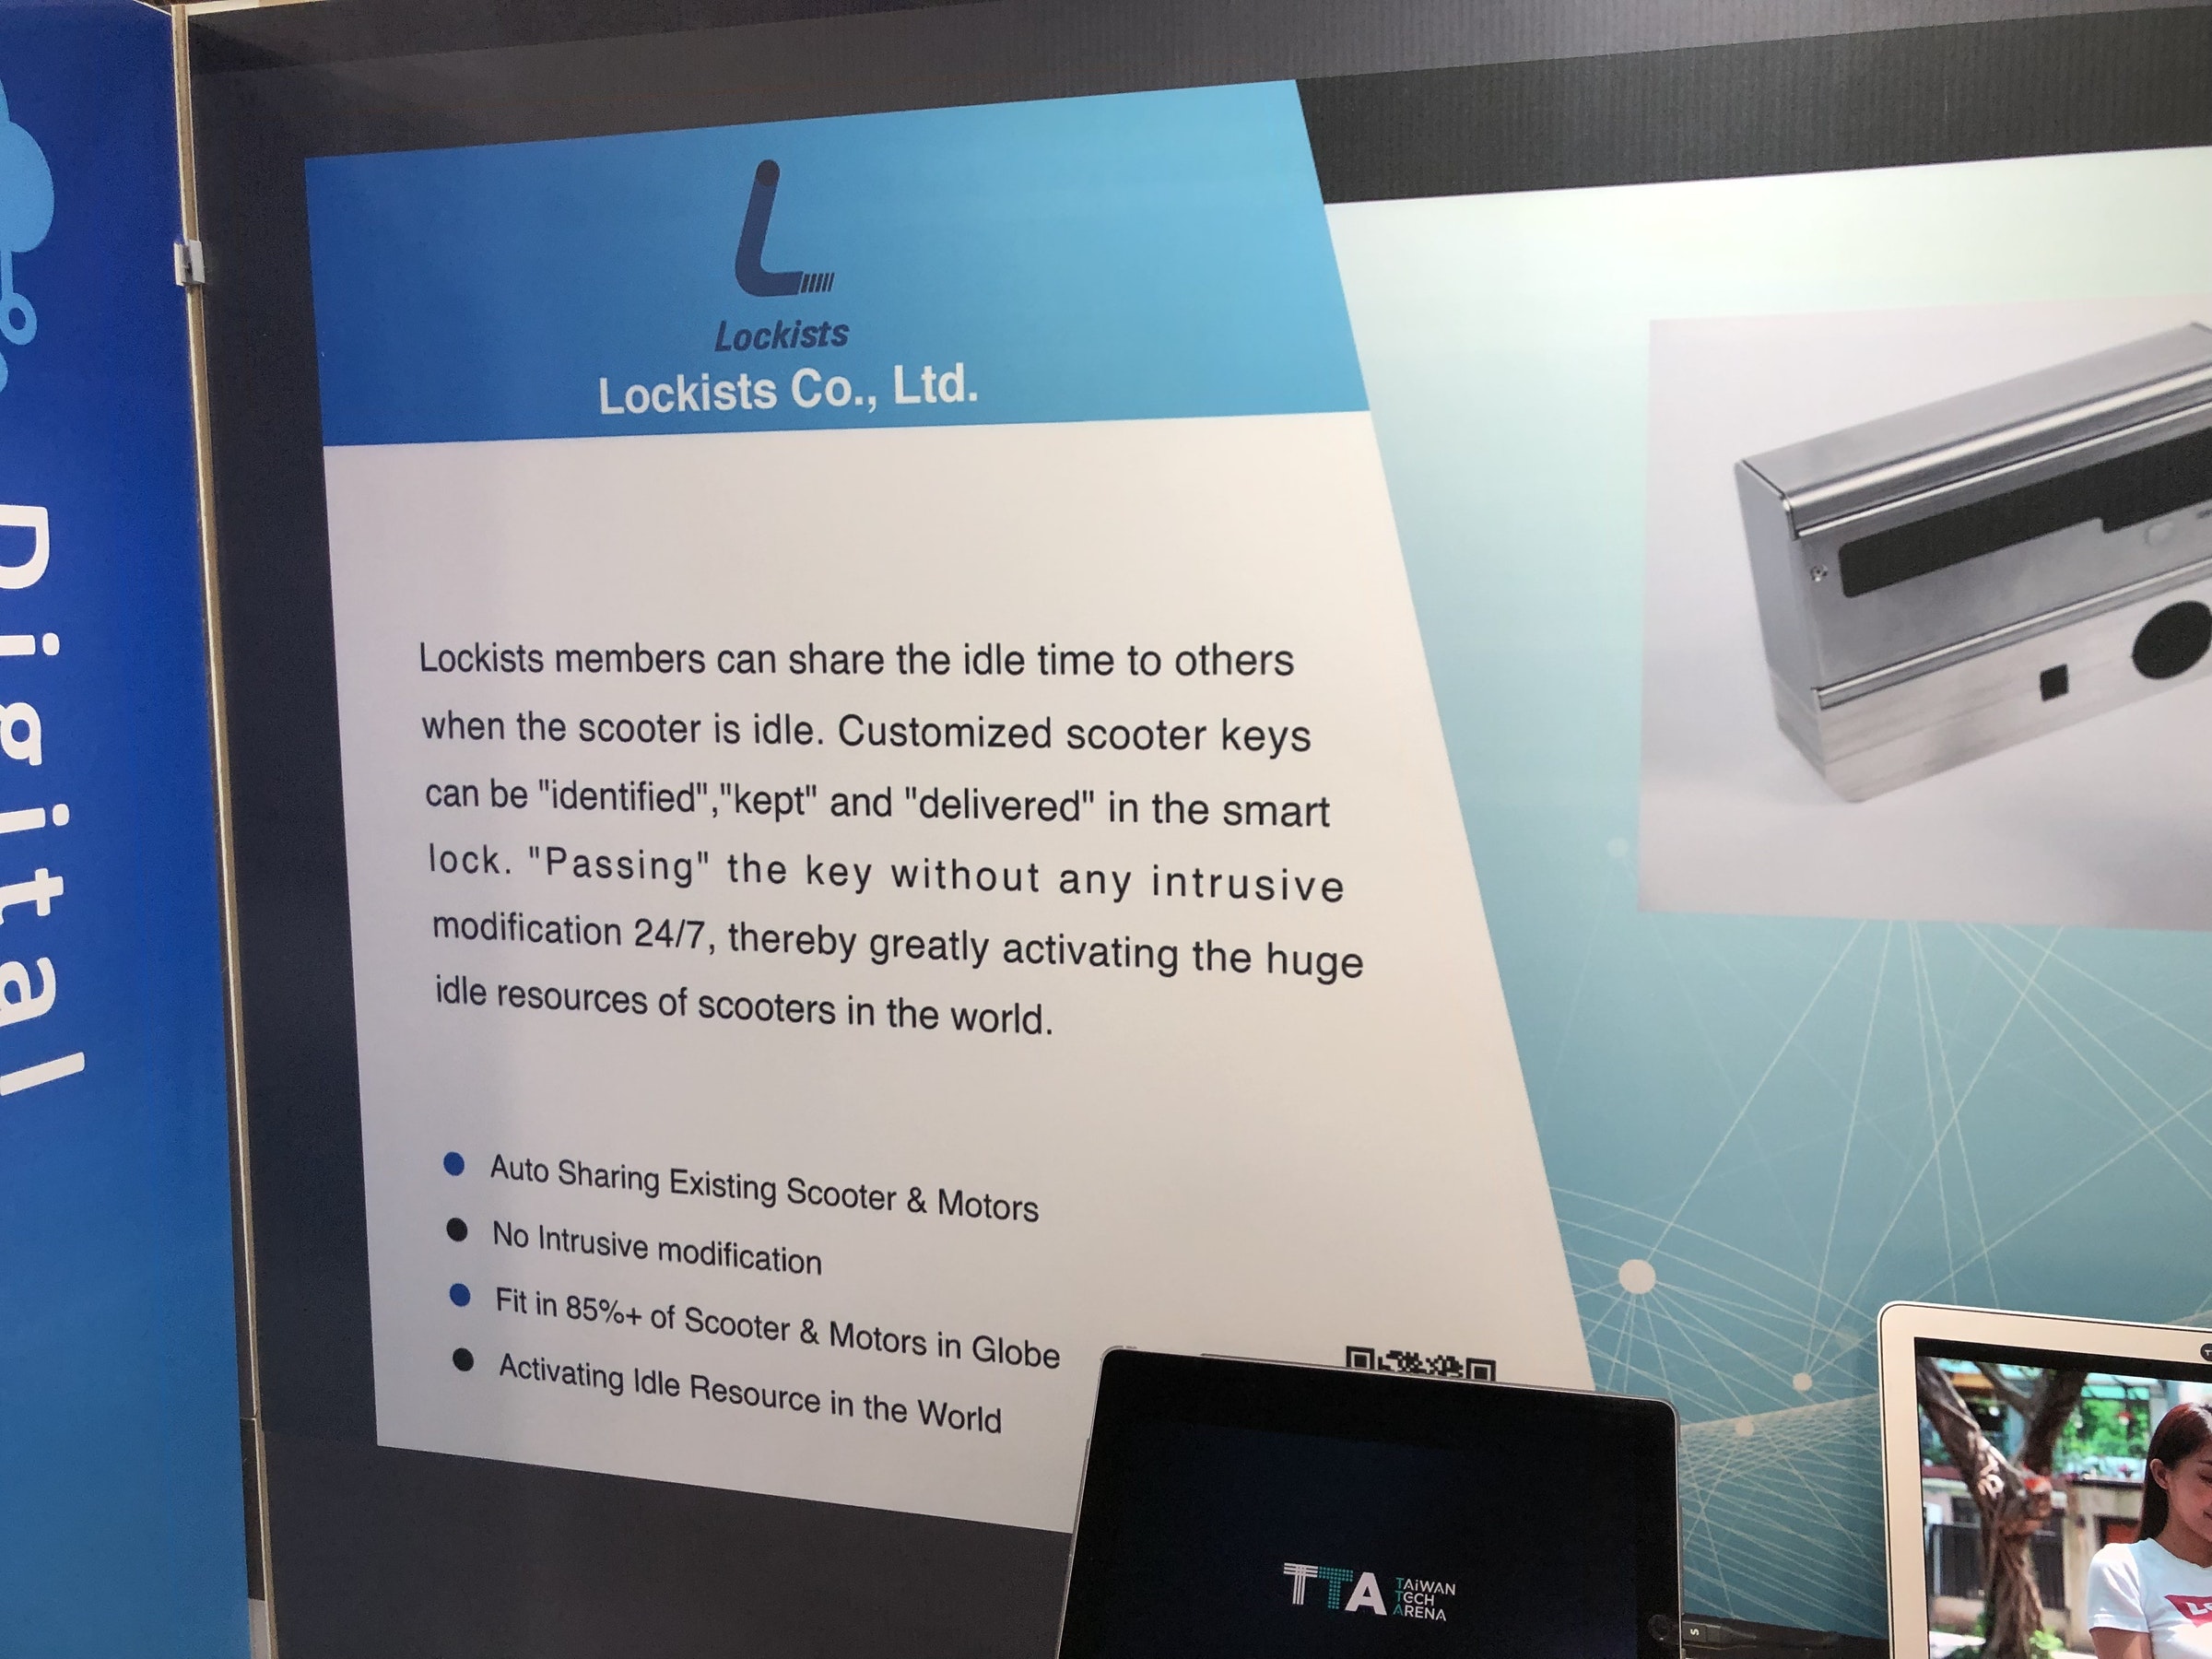 照片中提到了L.、Lockists、Lockists Co., Ltd.，跟雷克薩斯有關，包含了小工具、多媒體、顯示裝置、個人電腦、小工具